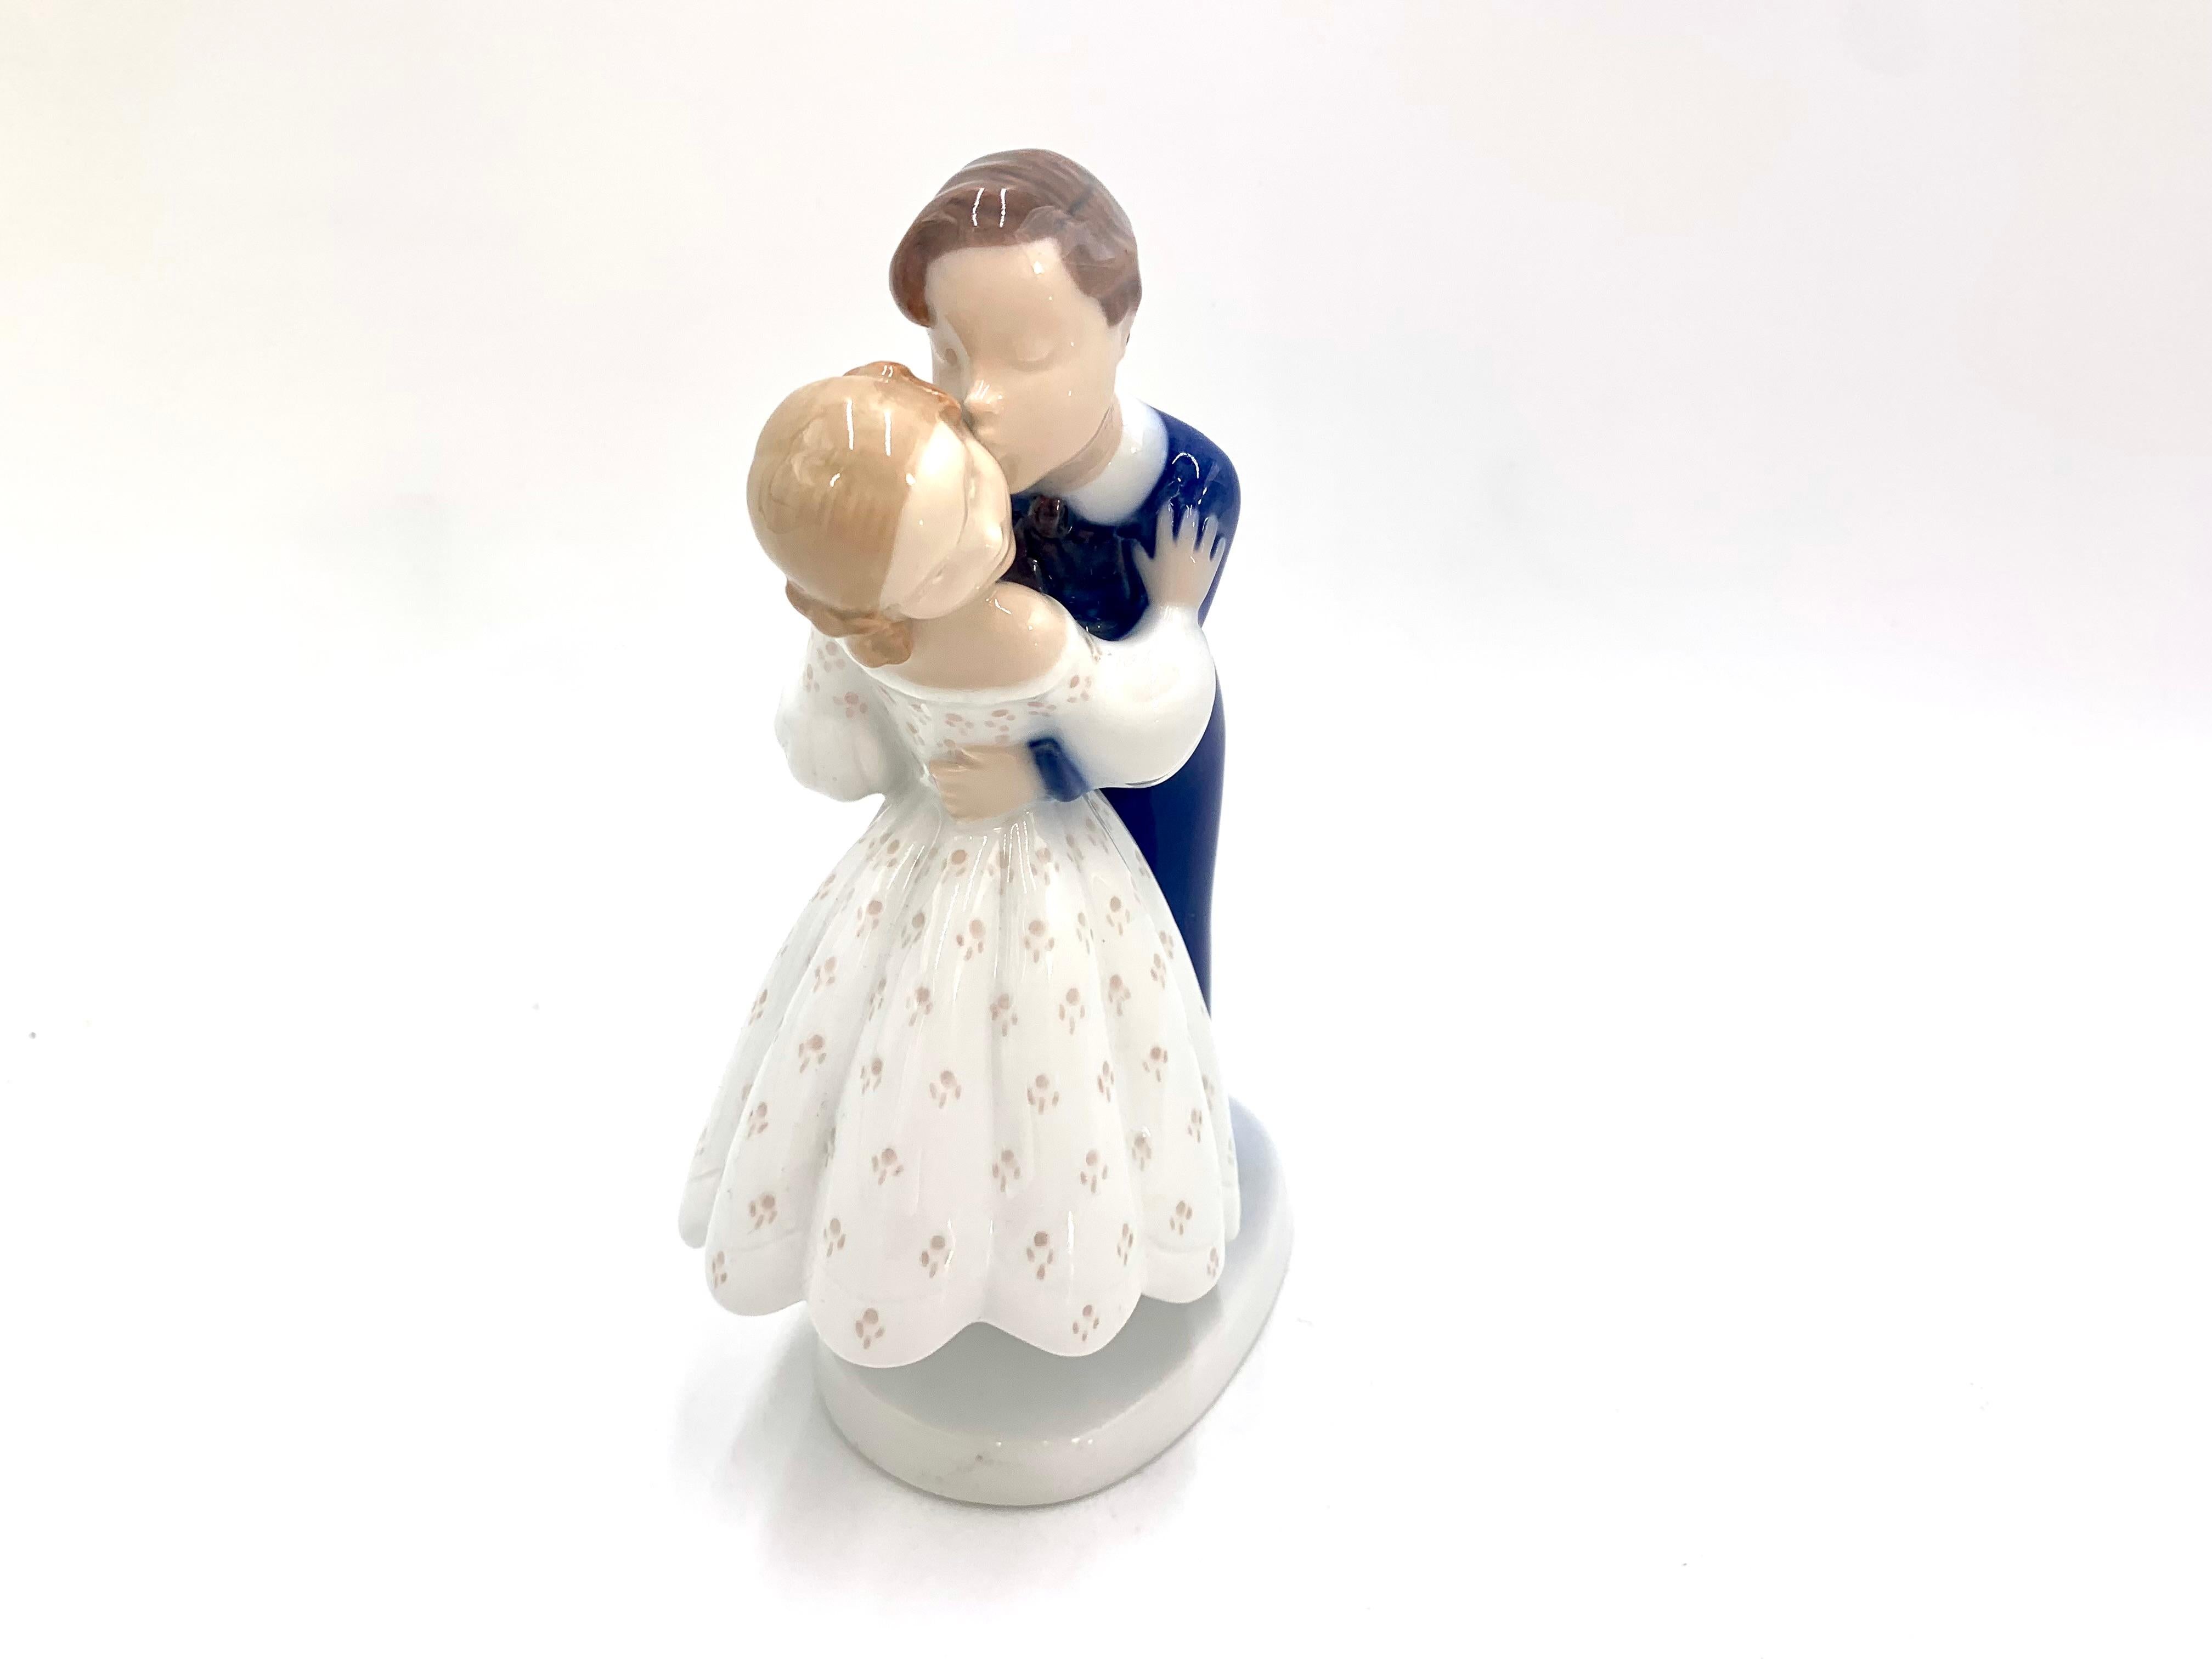 Figurine en porcelaine d'un couple - un garçon volant un baiser à une fille

Fabriqué au Danemark par Bing & Grondahl

Fabriqué dans les années 1960 / 1970. XXe siècle

Numéro de modèle : 2162

Très bon état, aucun dommage

Mesures :